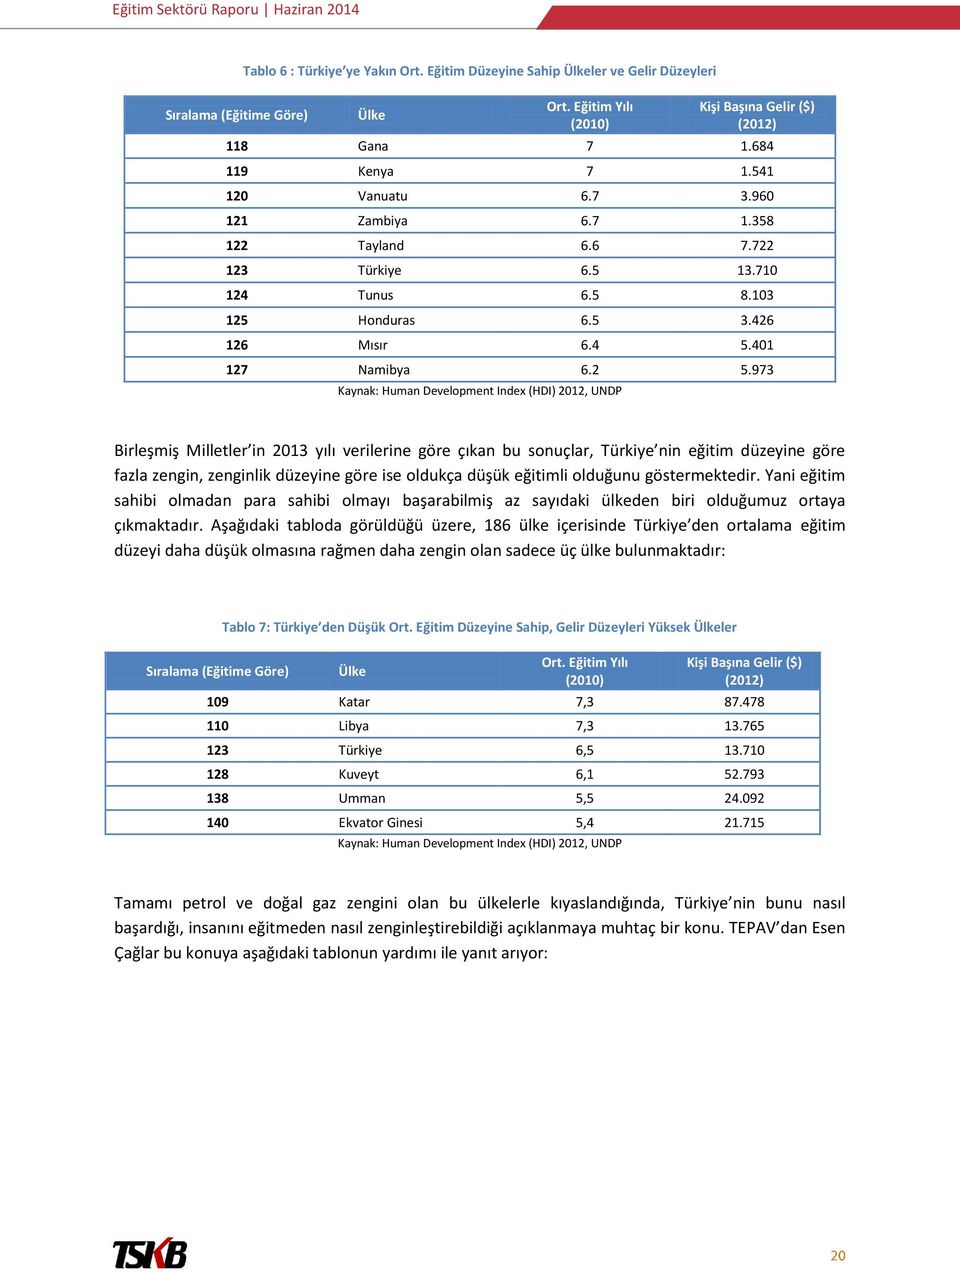 973 Kaynak: Human Development Index (HDI) 2012, UNDP Birleşmiş Milletler in 2013 yılı verilerine göre çıkan bu sonuçlar, Türkiye nin eğitim düzeyine göre fazla zengin, zenginlik düzeyine göre ise